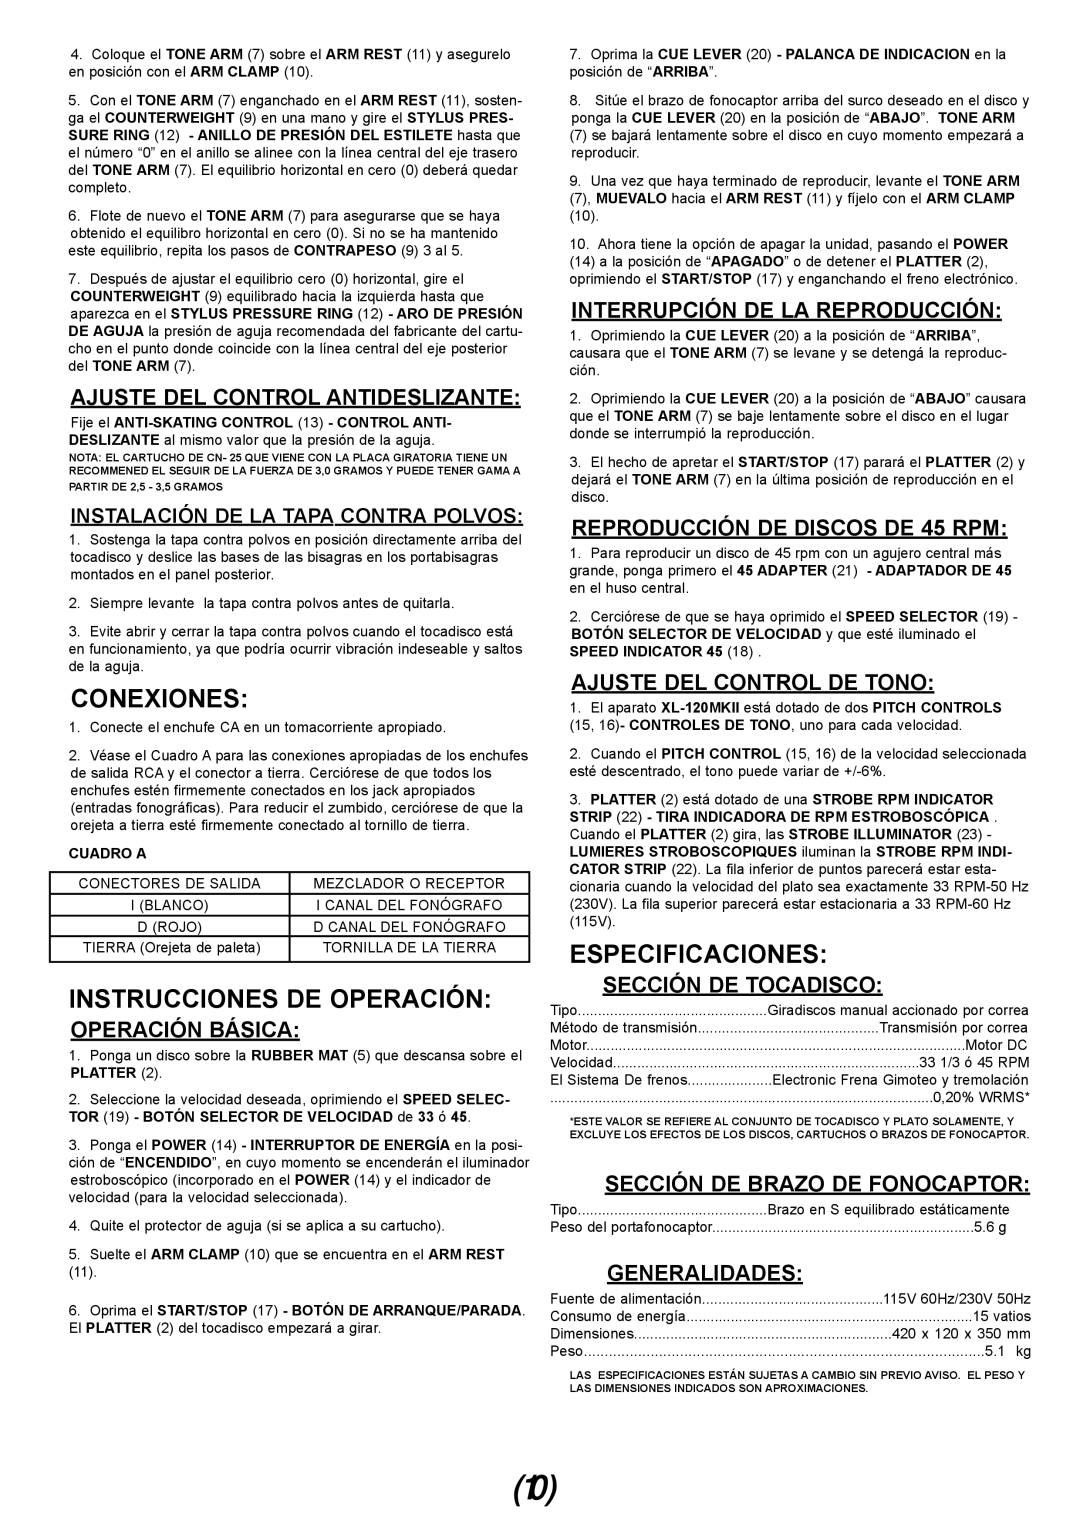 Gemini XL-120MKII manual Conexiones, Instrucciones De Operación, Especificaciones, Ajuste Del Control Antideslizante 